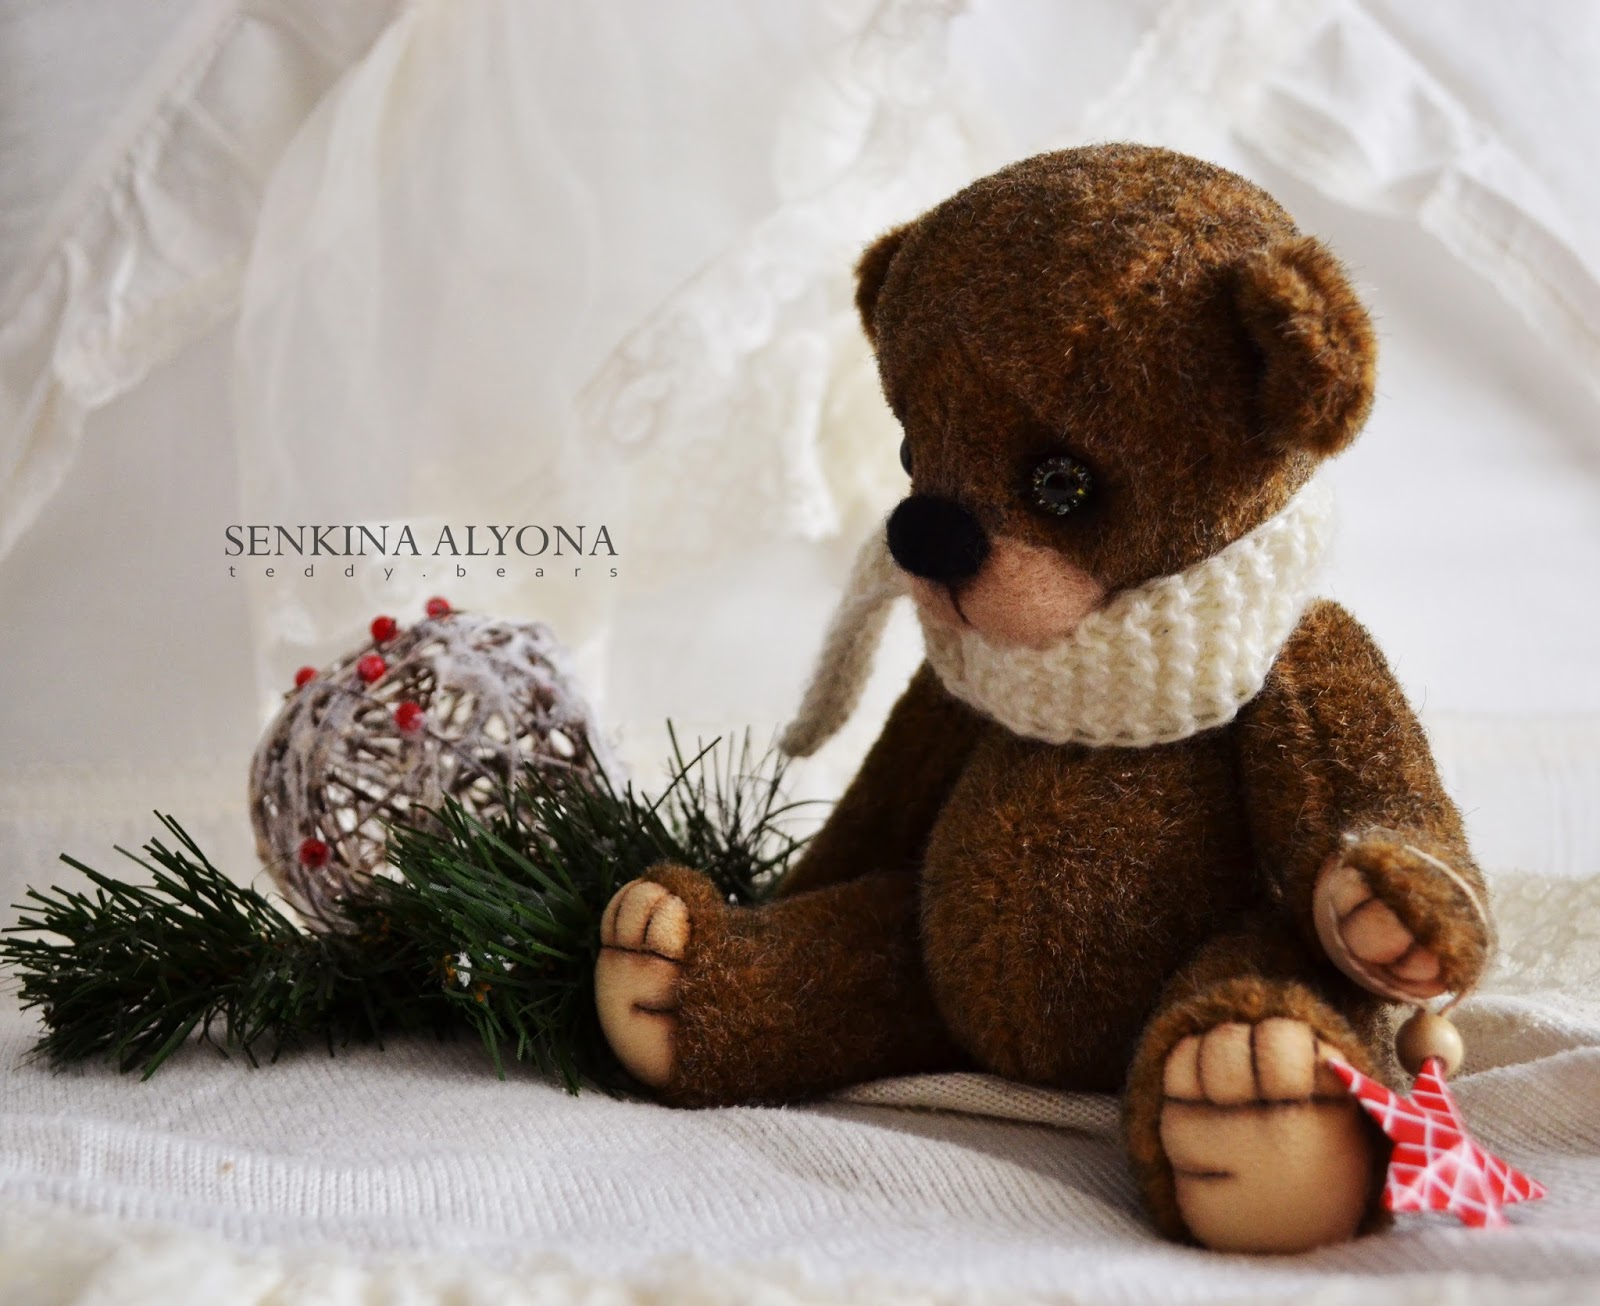 мишка, медведь, новый год, рождество, тедди, мишка тедди, teddy bear, bear, winter bear , christmas, merry christmas, handmade, toy, игрушка ручной работы